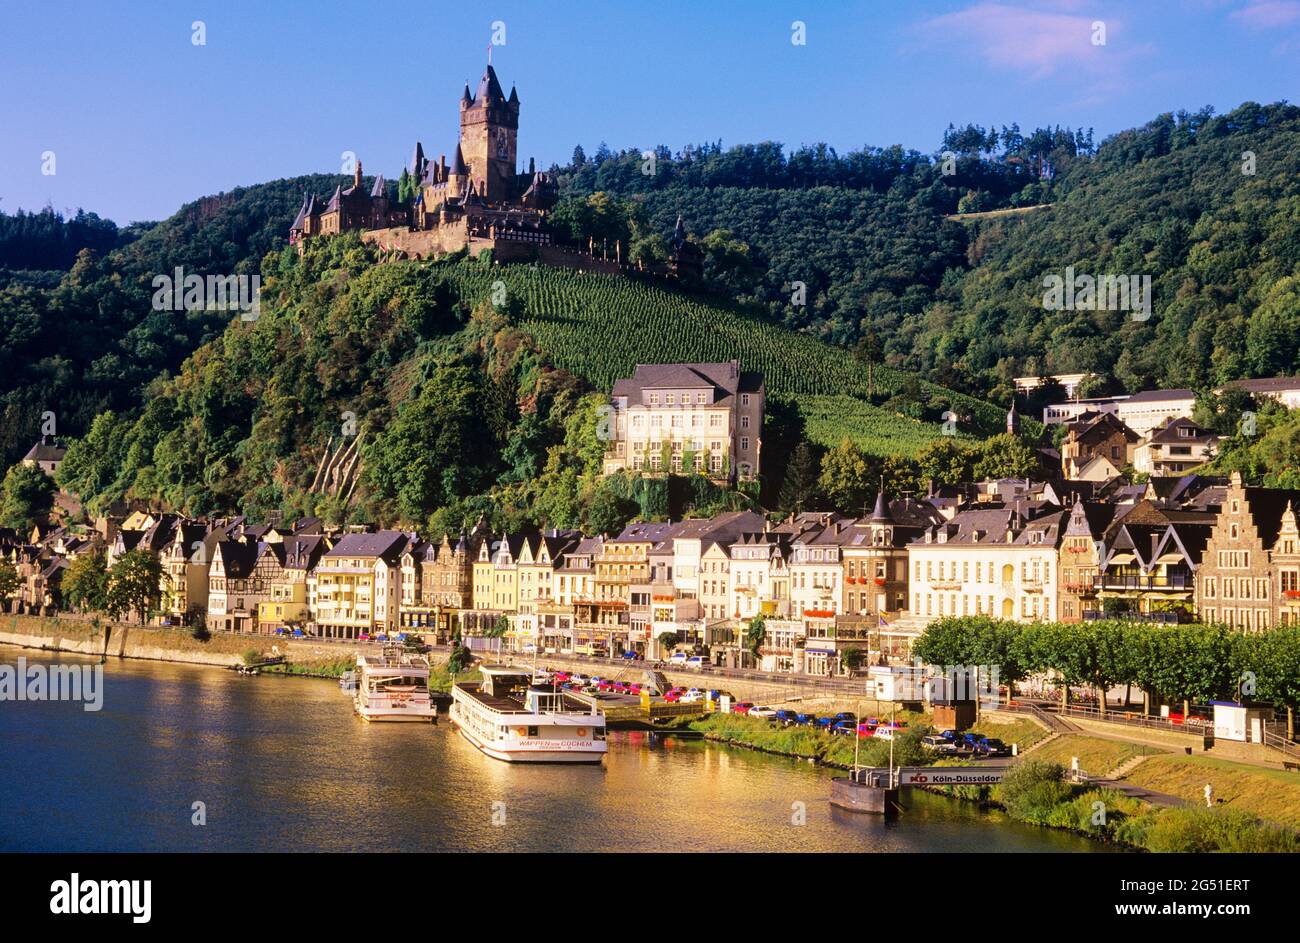 Stadt Chochem, Schloss Chochem und Mosel, Rheinland-Pfalz, Deutschland Stockfoto